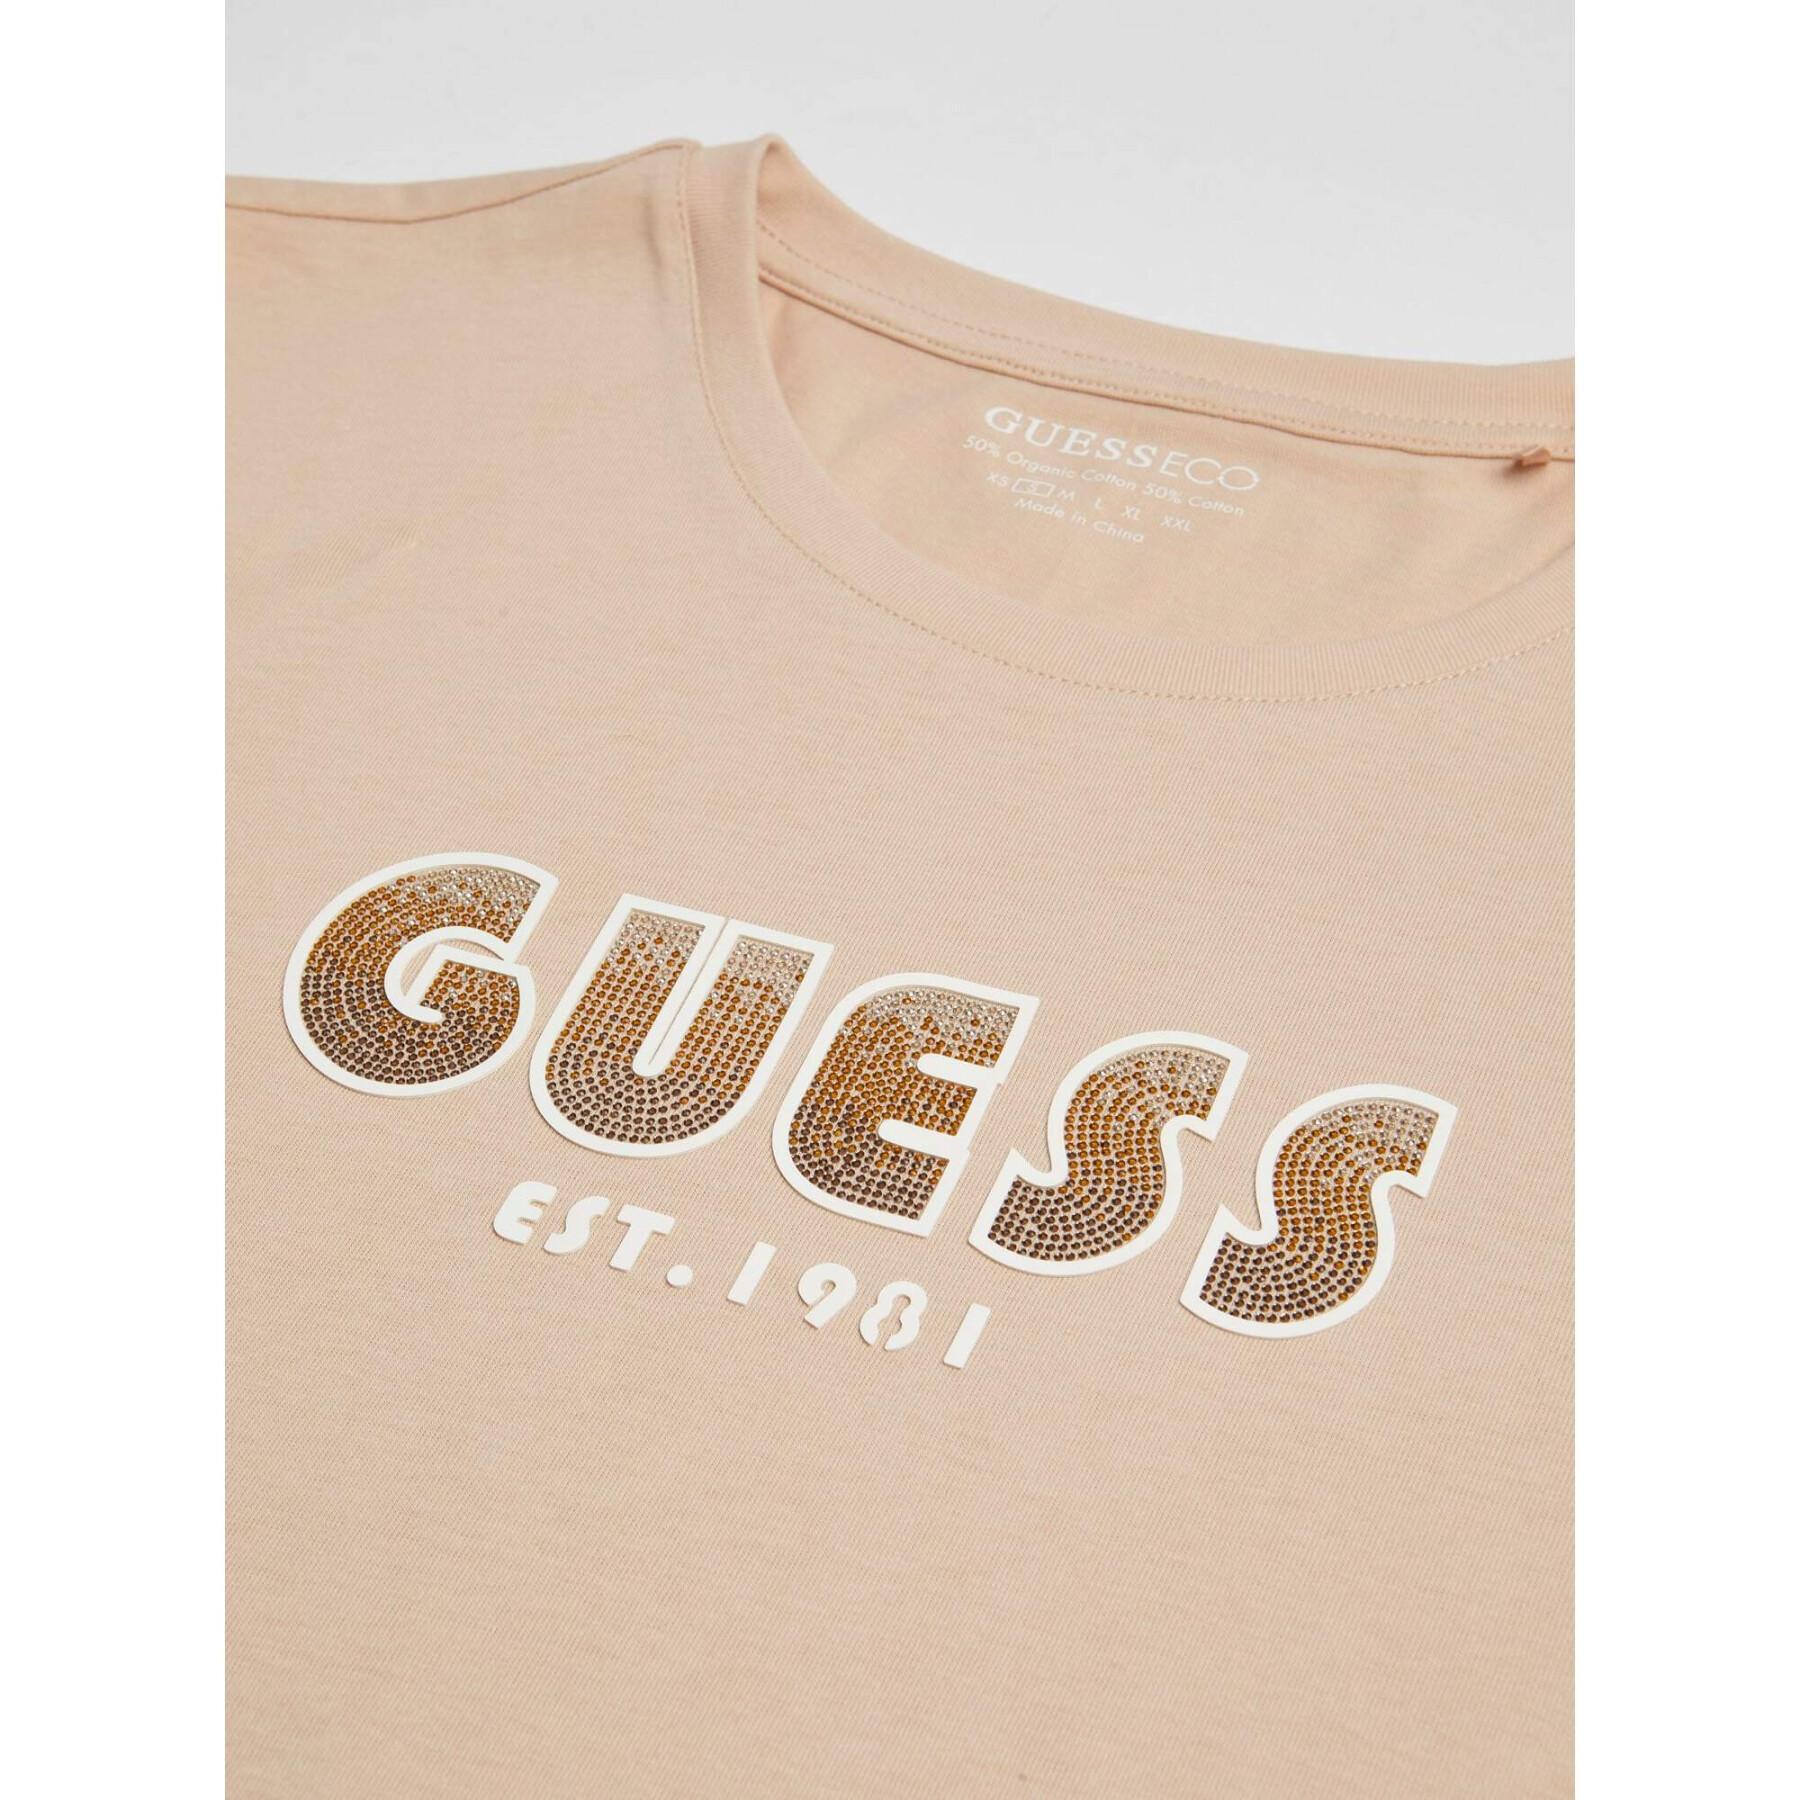 T-Shirt Damen Guess Shaded Logo